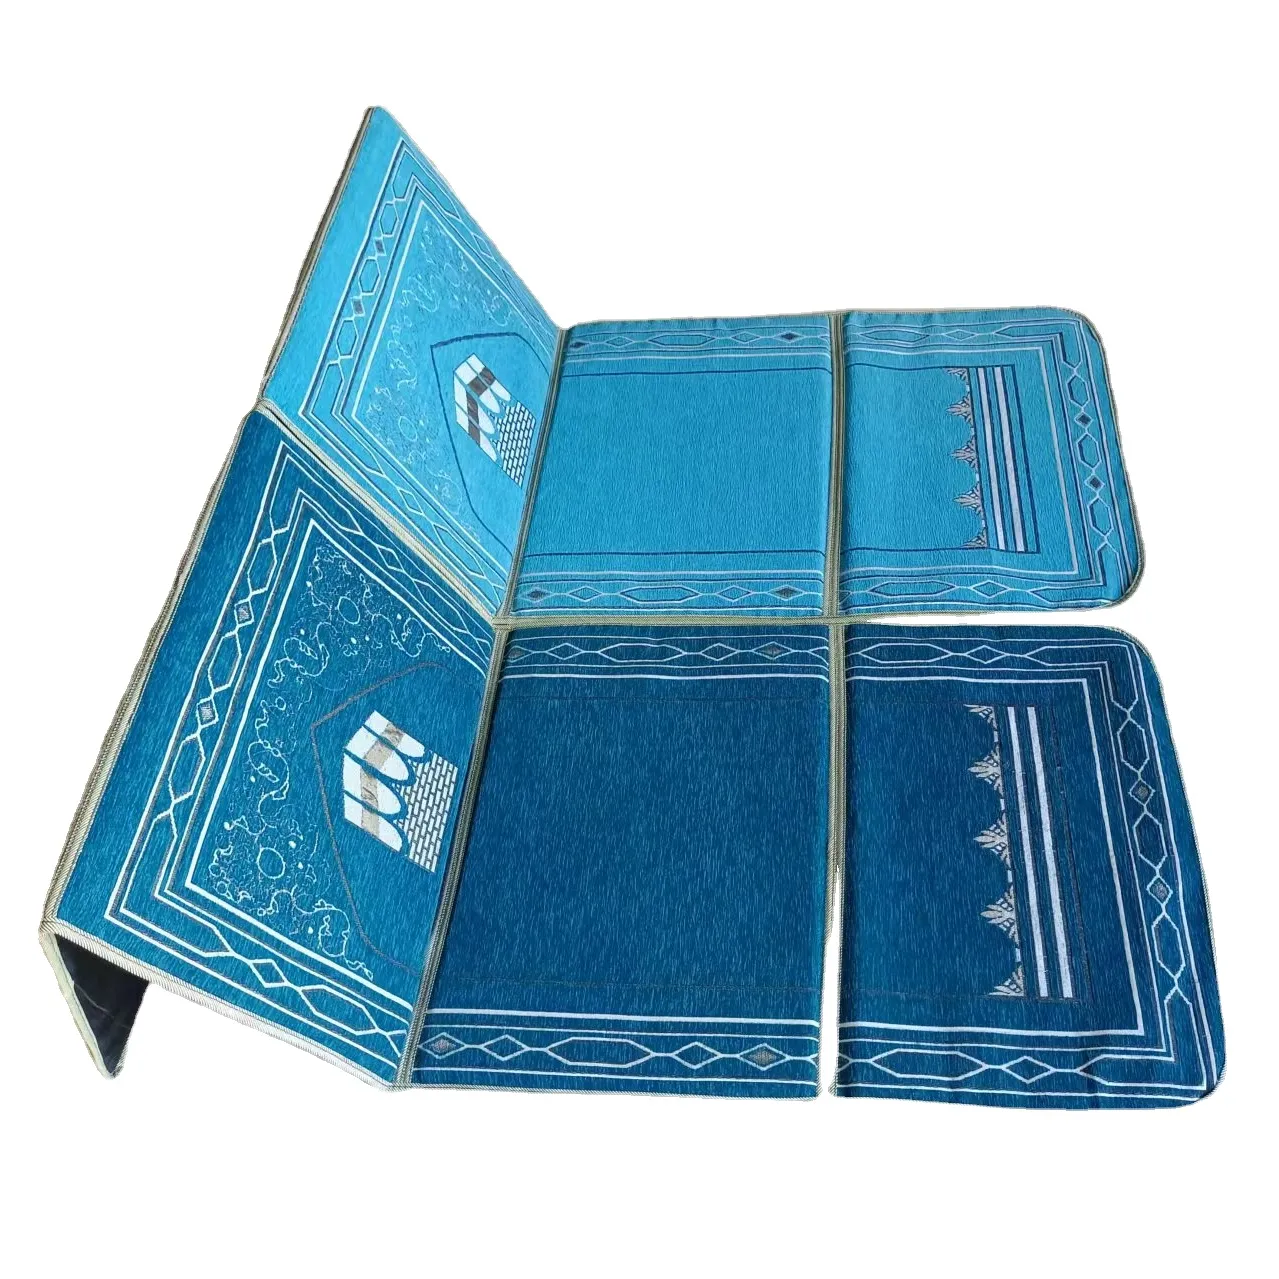 Nuovo design del tappeto da preghiera islamico della turchia tappetini da preghiera pieghevoli musulmani tappeto della moschea del pakistan con schienale